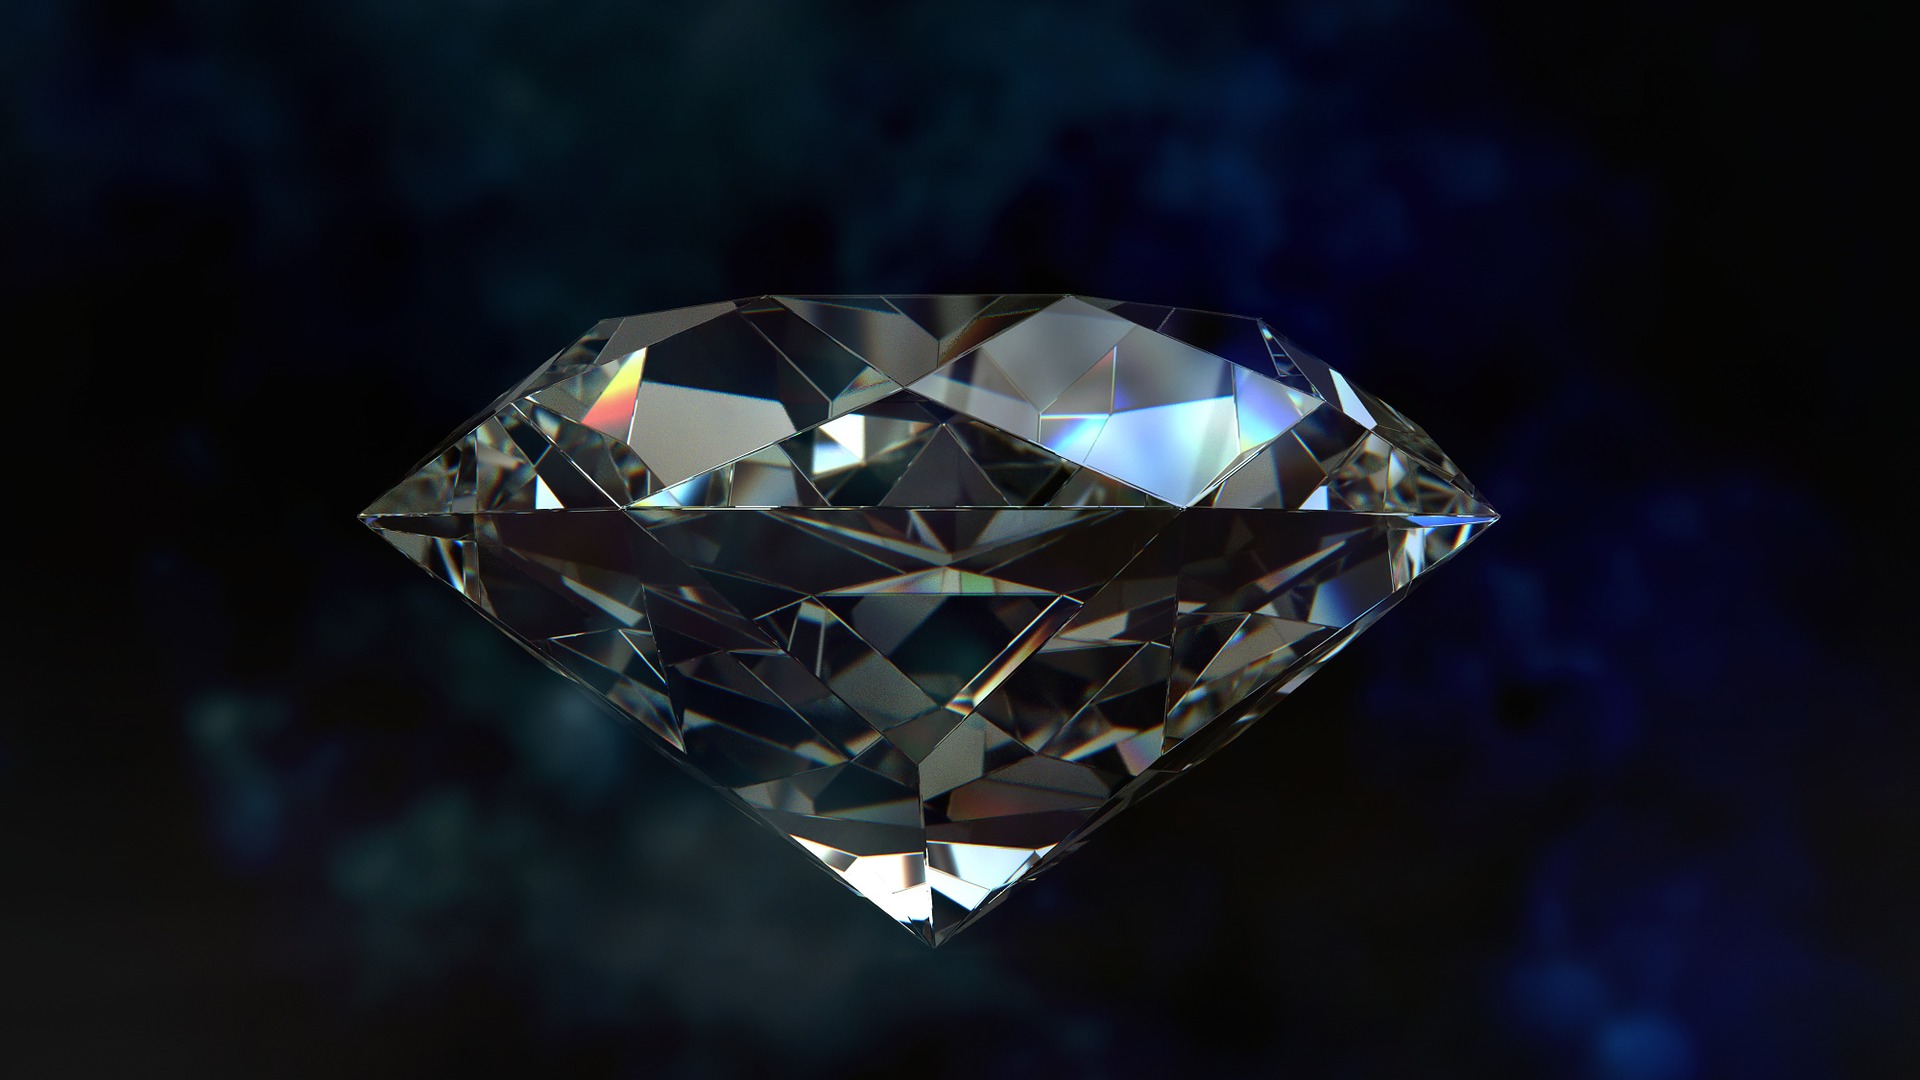 ウィッテルスバハ・ダイヤは過去最高の20億円で落札されるほどの価値がある